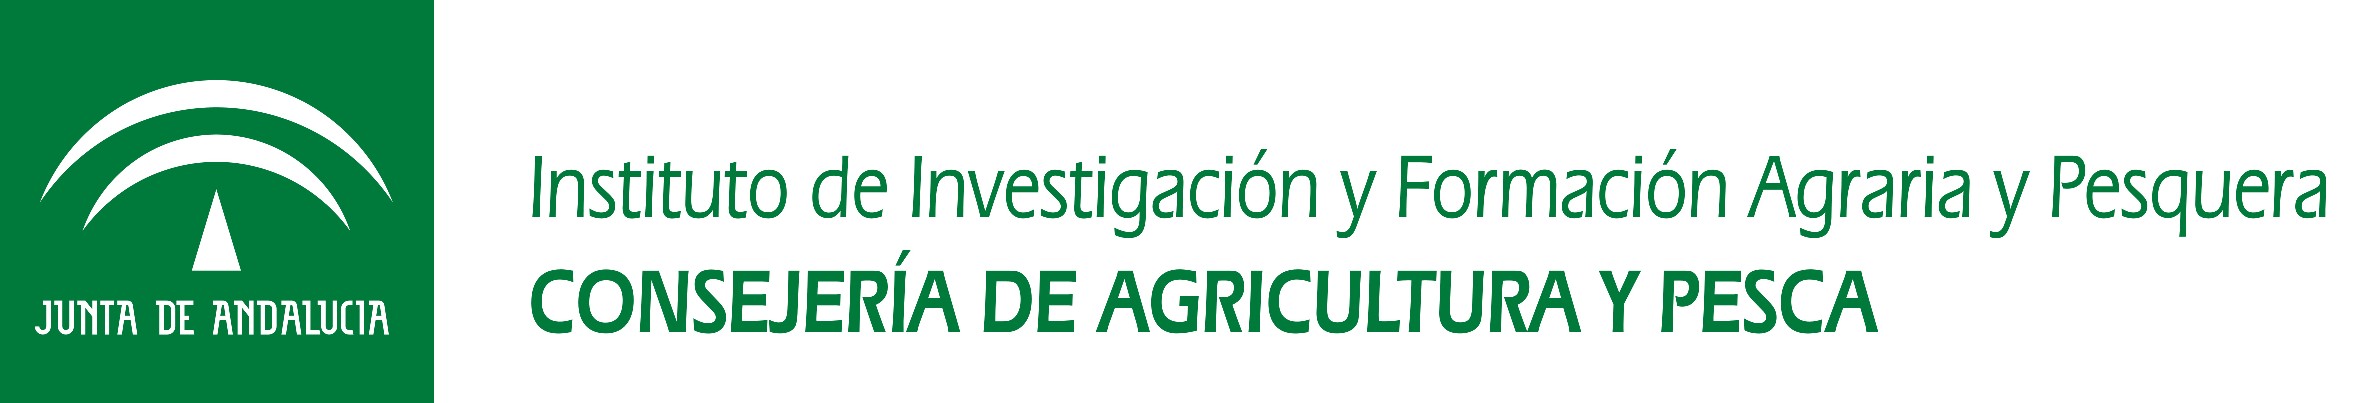 Ensayo sobre el cultivo de la Stevia en la Vega de Granada Instituto de Investigación y Formación Agraria y Pesquera Edificio BLUENET. Avda.